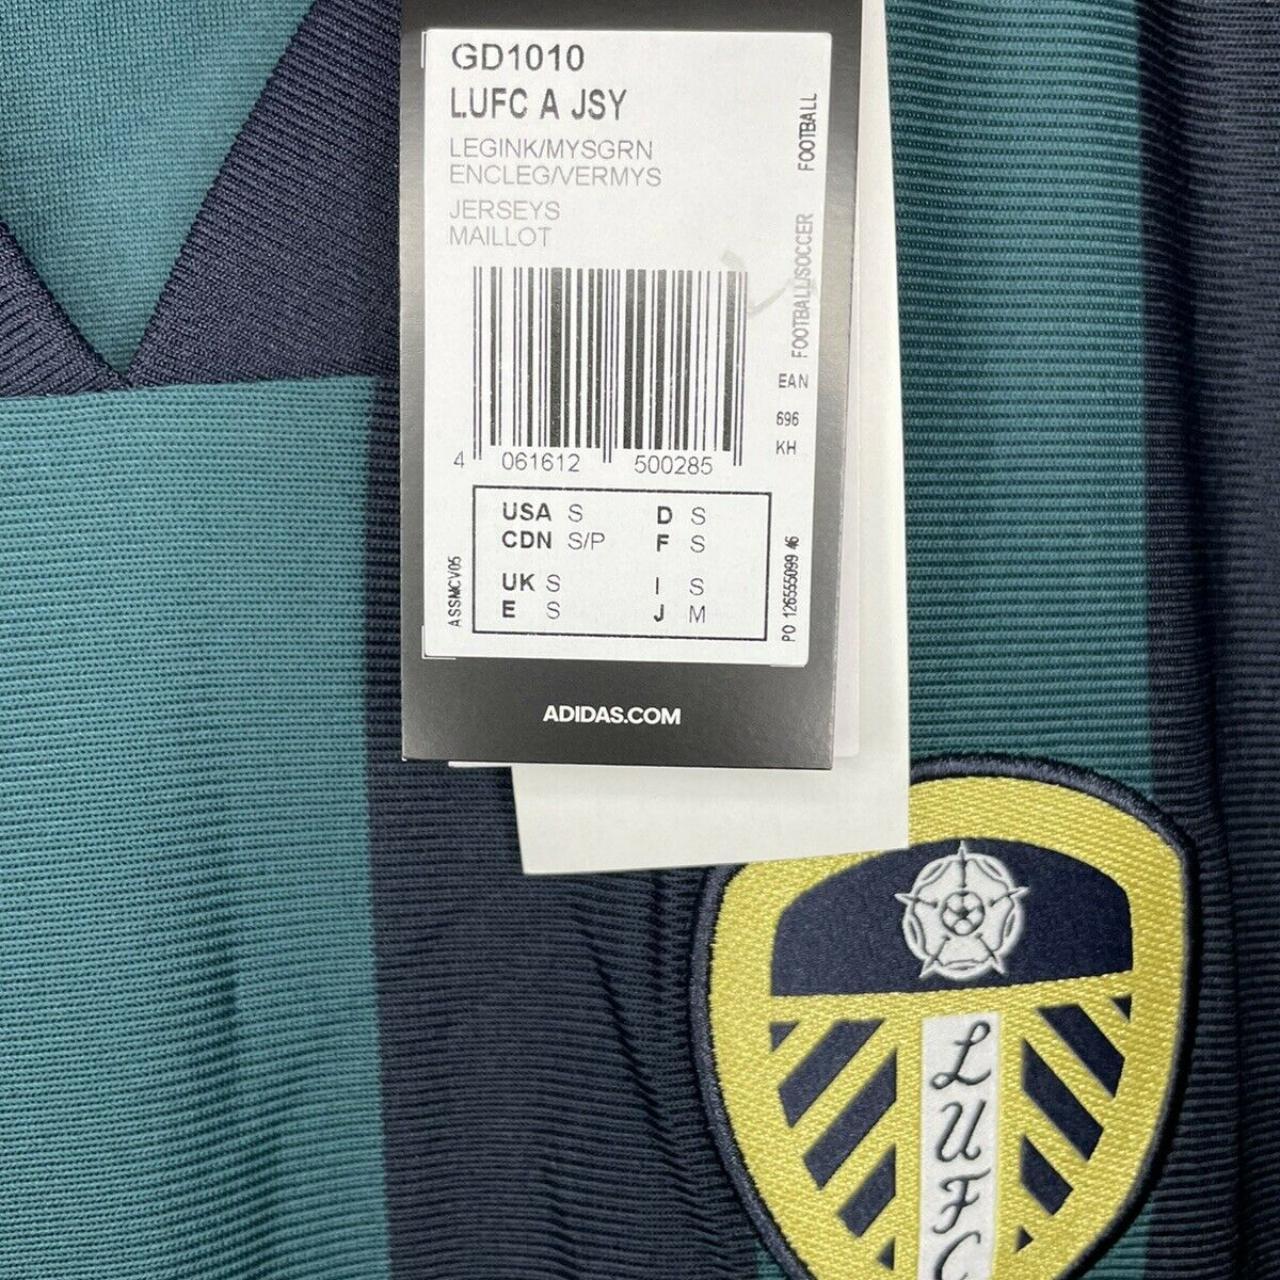 Leeds United 2020/21 Away Football Shirt Size Small... - Depop